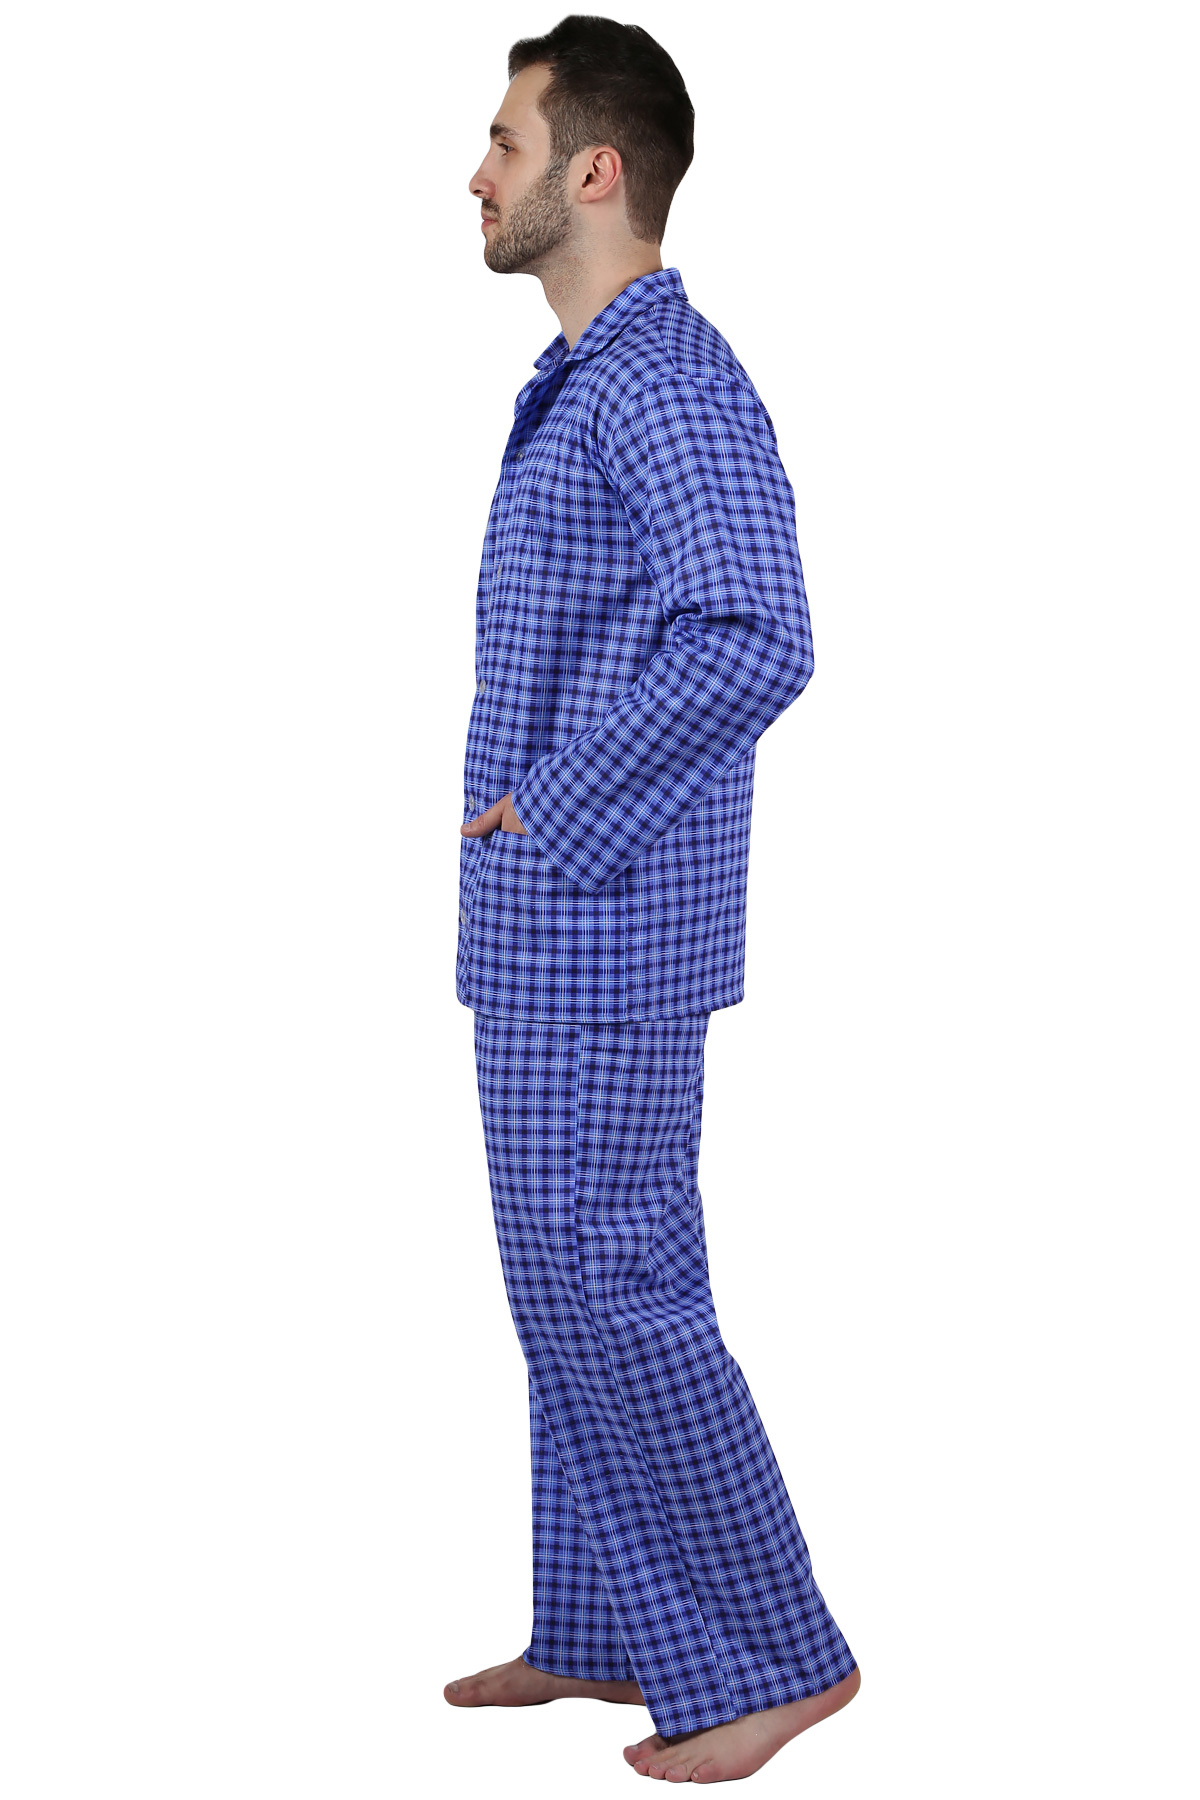 Муж. пижама арт. 22-0210 В ассортименте р. 56 Оптима трикотаж, размер 56 - фото 2